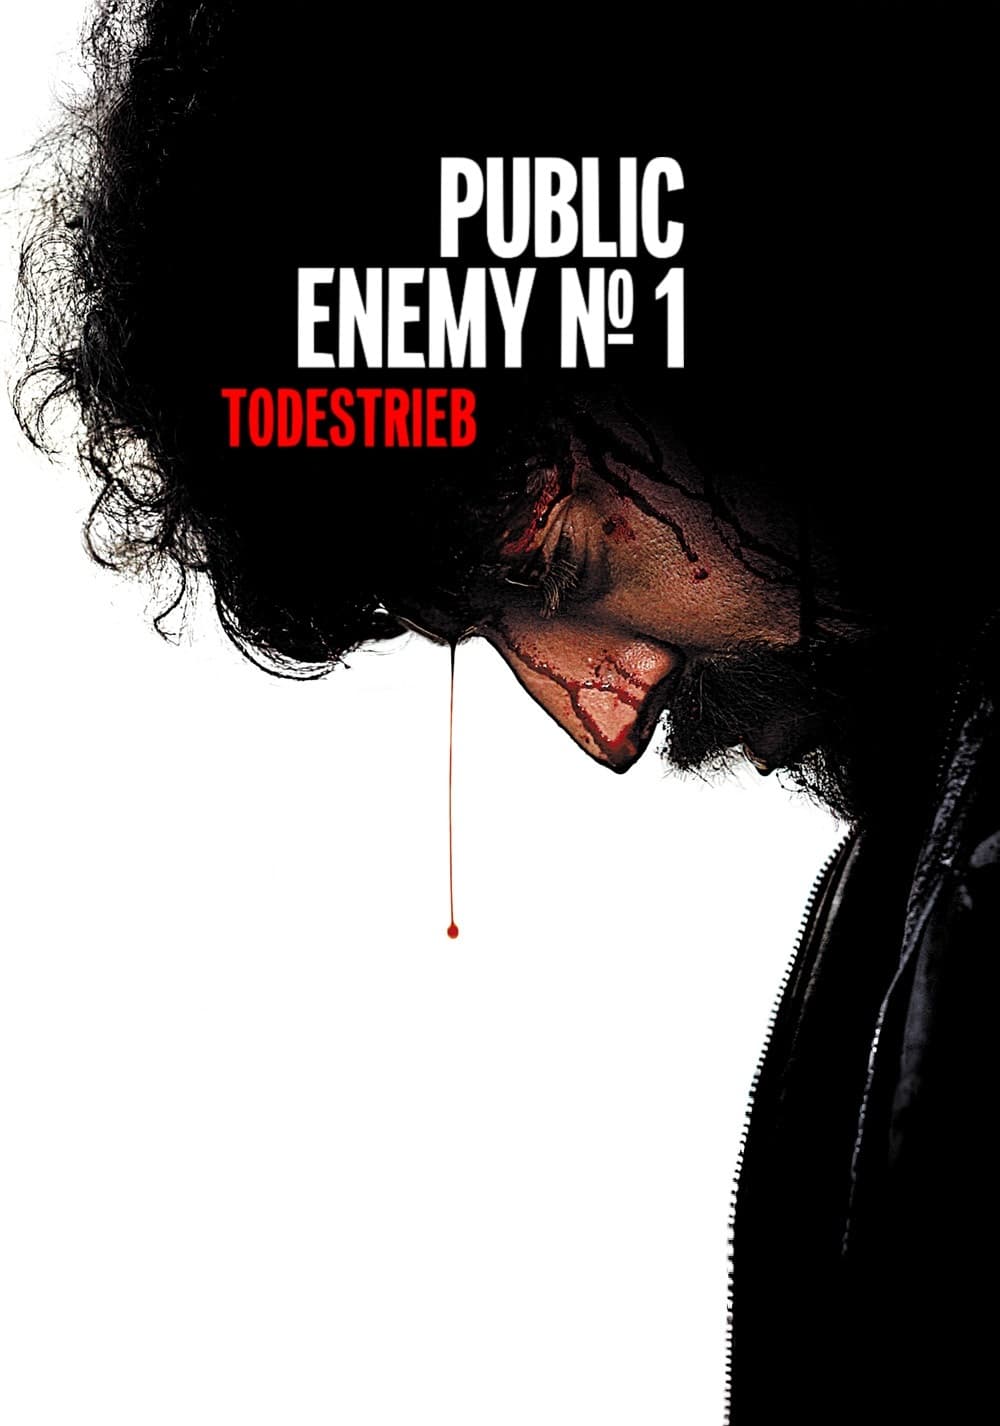 Plakat von "Public Enemy No. 1 - Todestrieb"